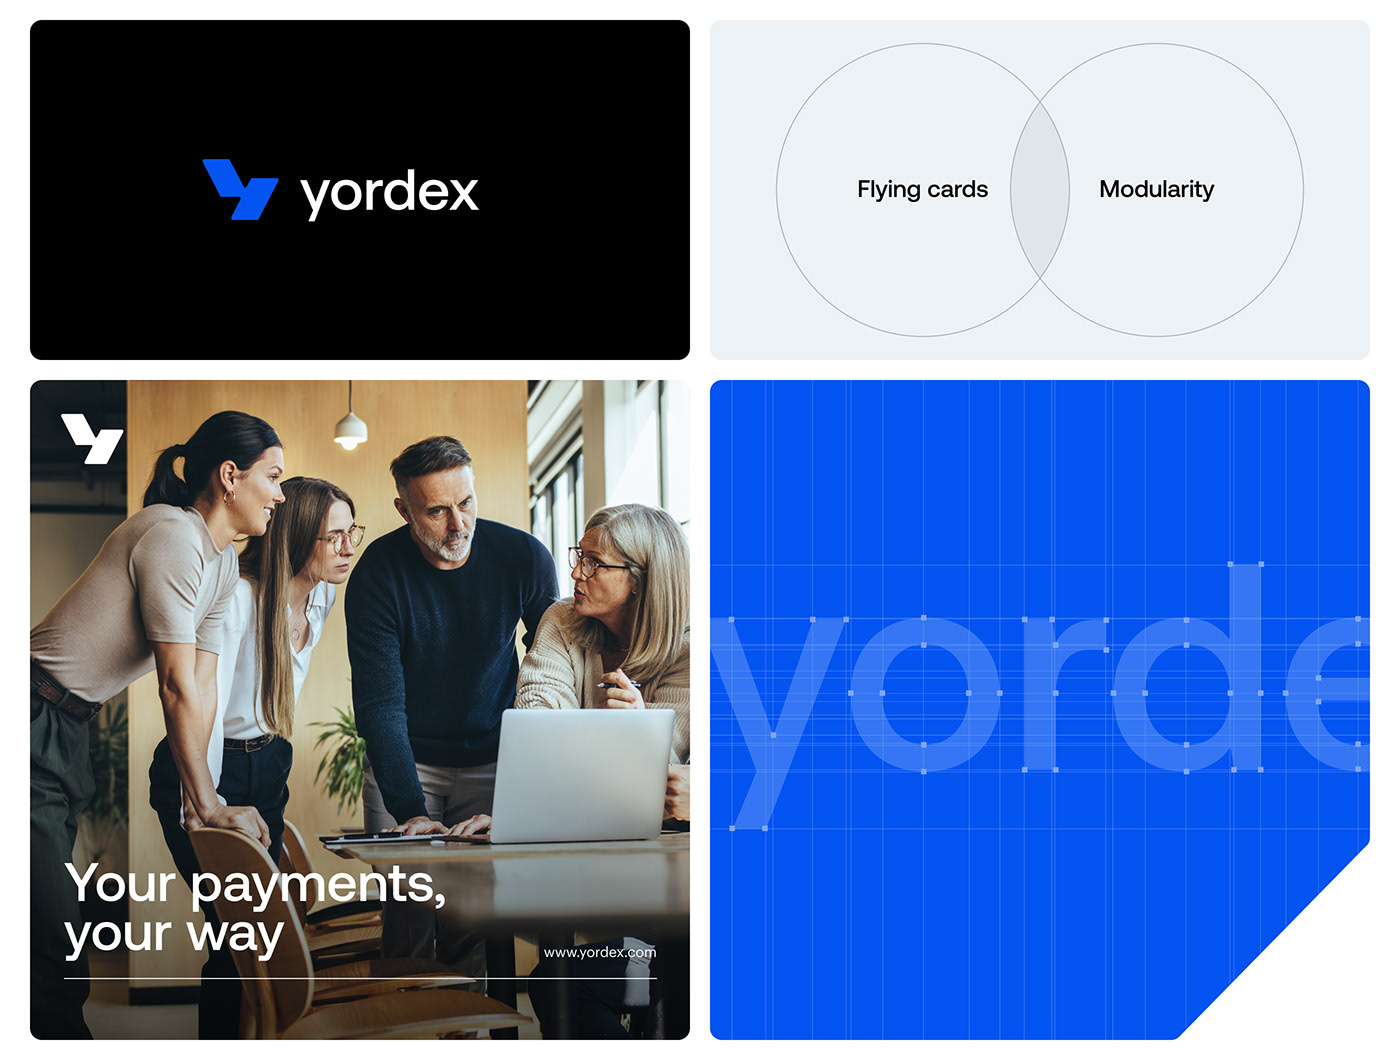 Yordex Logotype Meaning